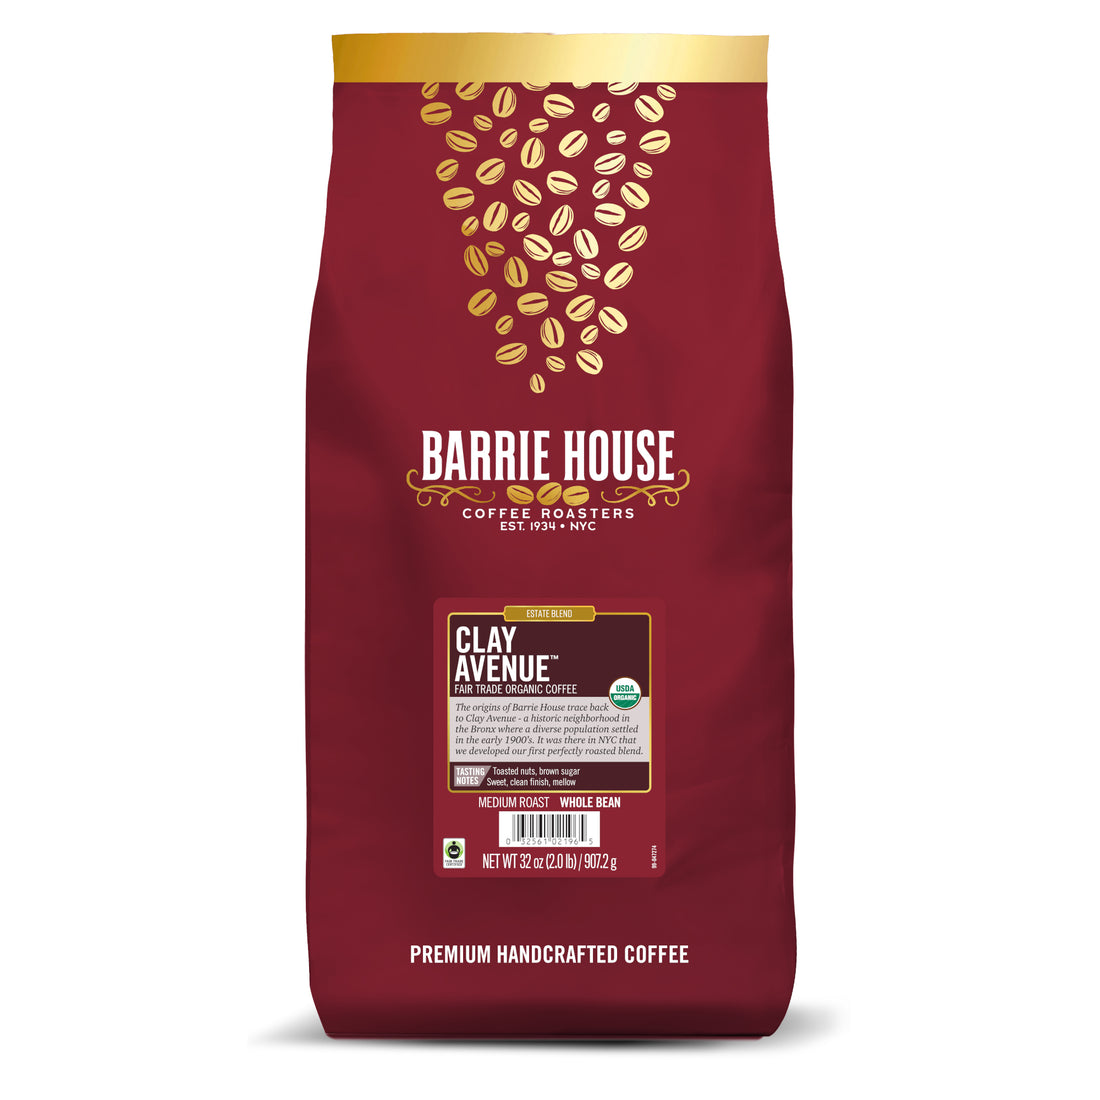 Barrie House Clay Avenue Fair Trade Organic Coffee